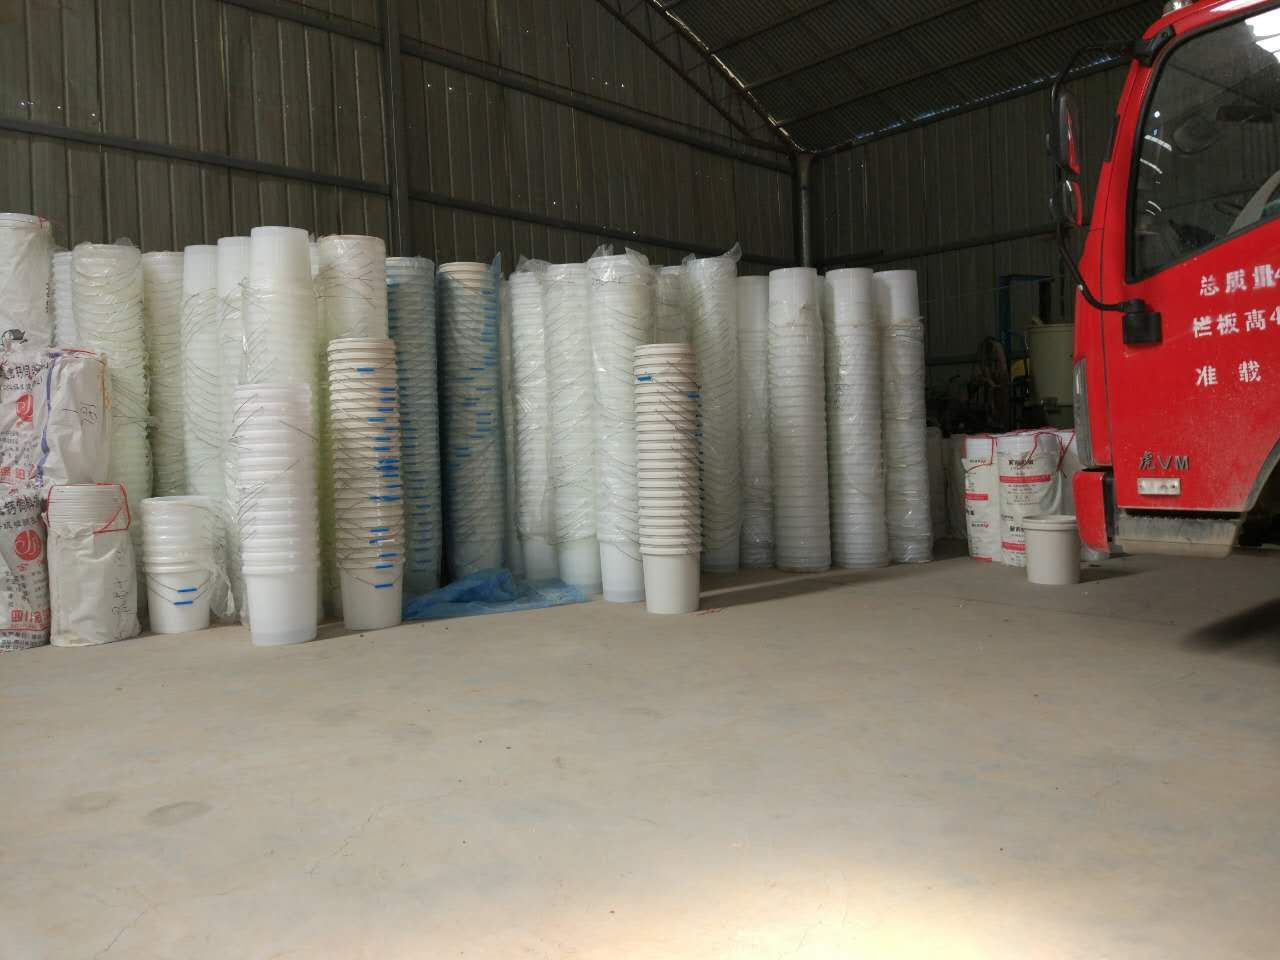 郑州市塑料桶18升_塑料桶18升批发厂家塑料桶18升_塑料桶18升批发郑州生产厂家